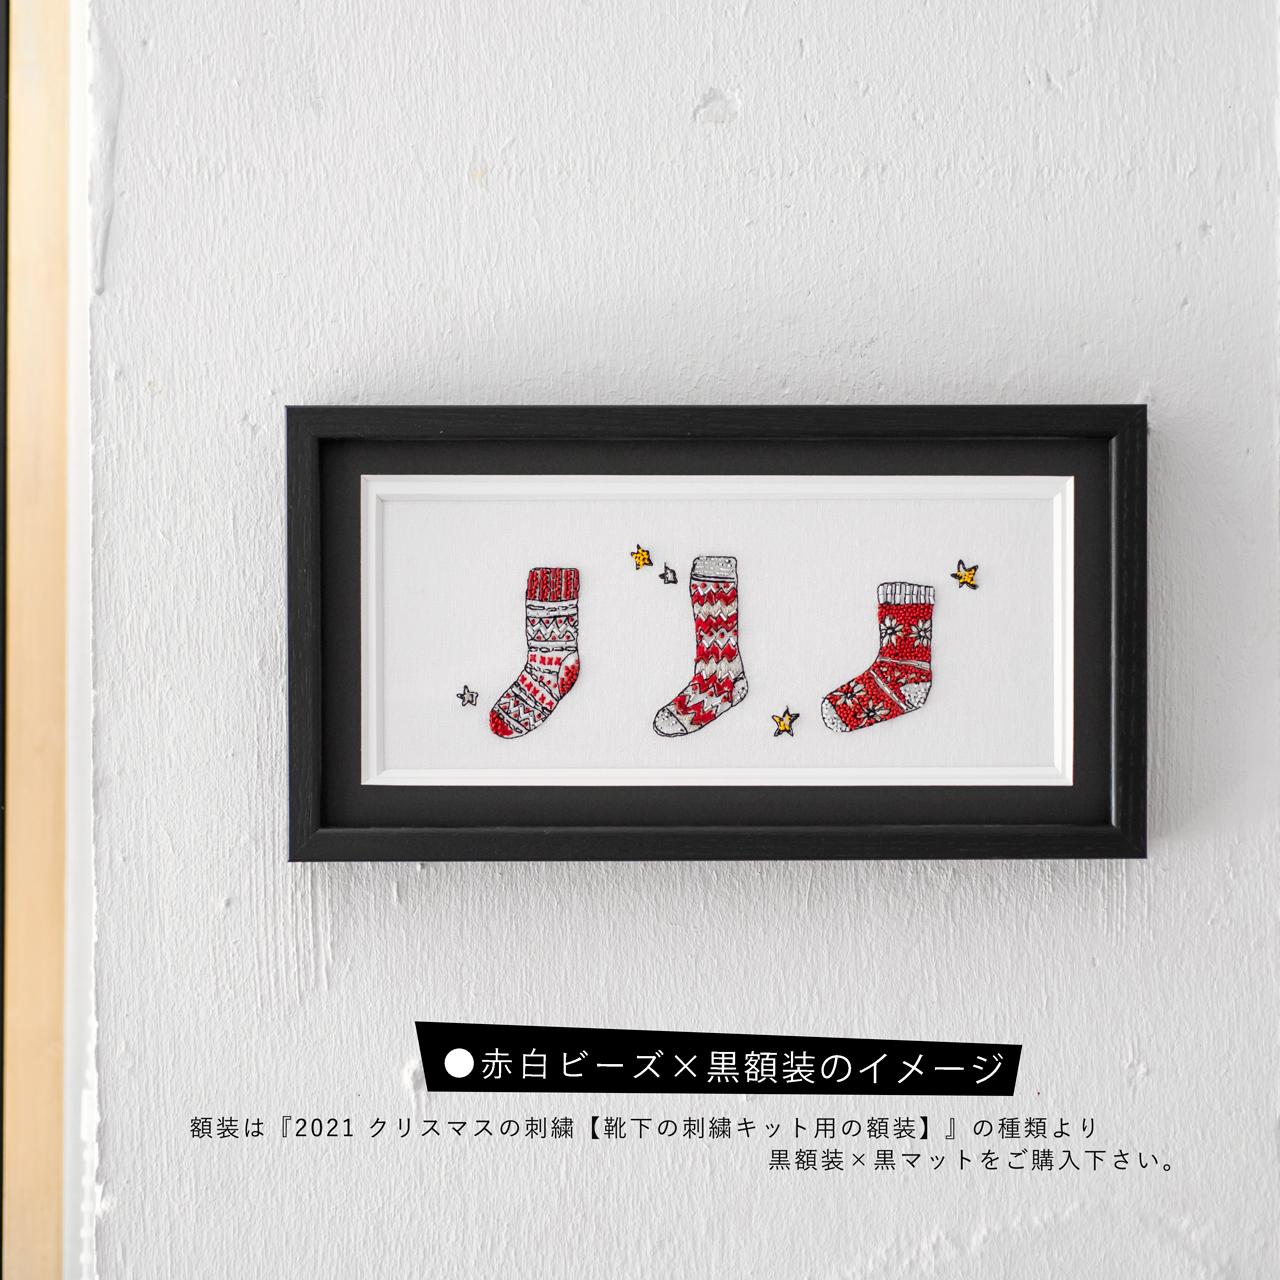 クリスマスの刺繍【靴下の刺繍キット】 | Colorbucket by Lemmikko powered by BASE